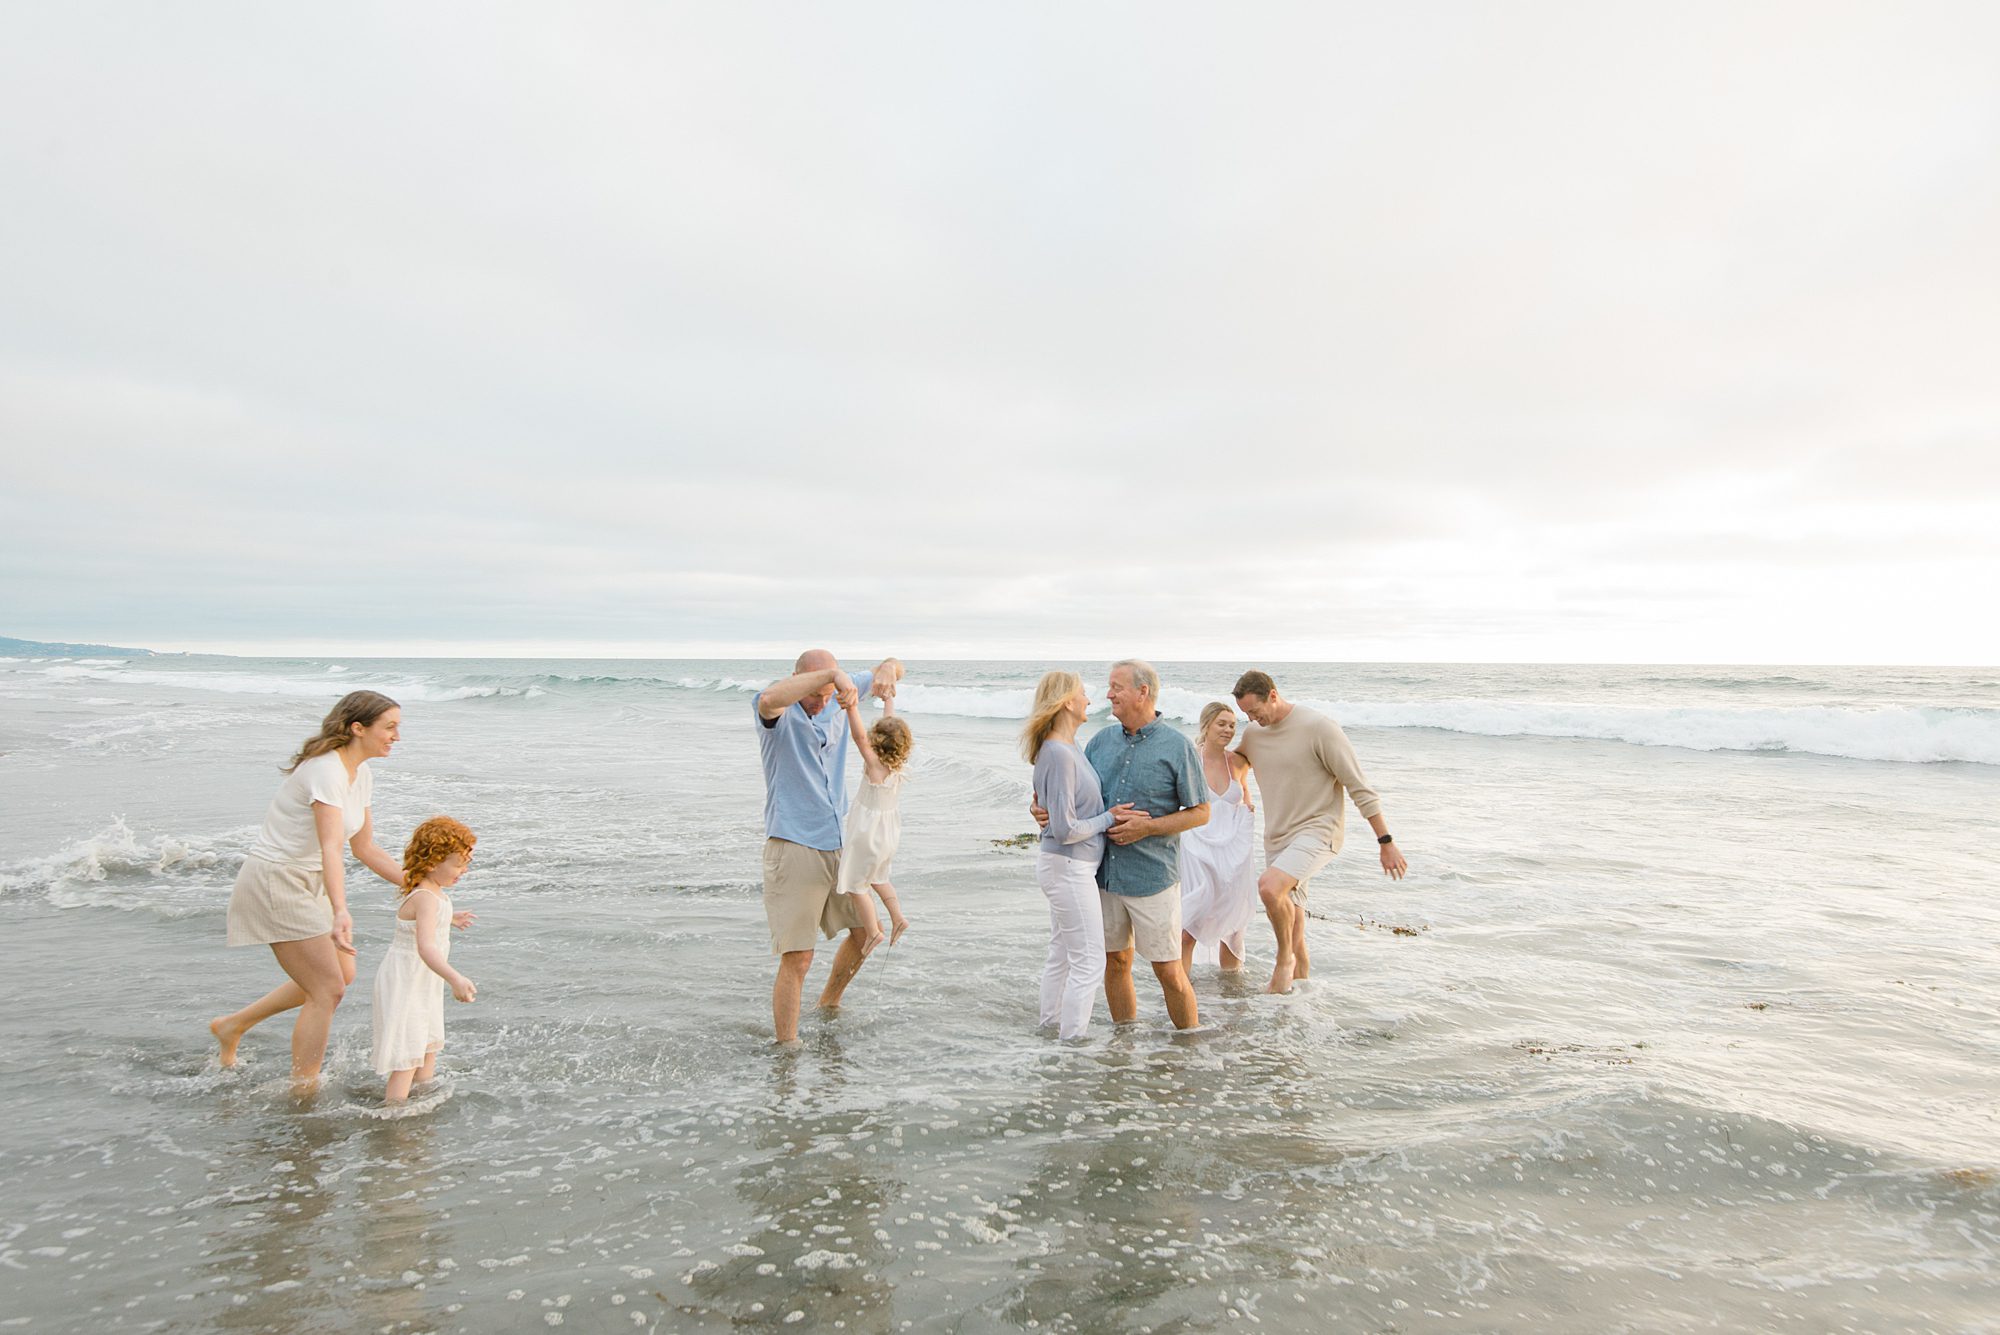 San Diego family photographer Leigh Castellii captures extended family